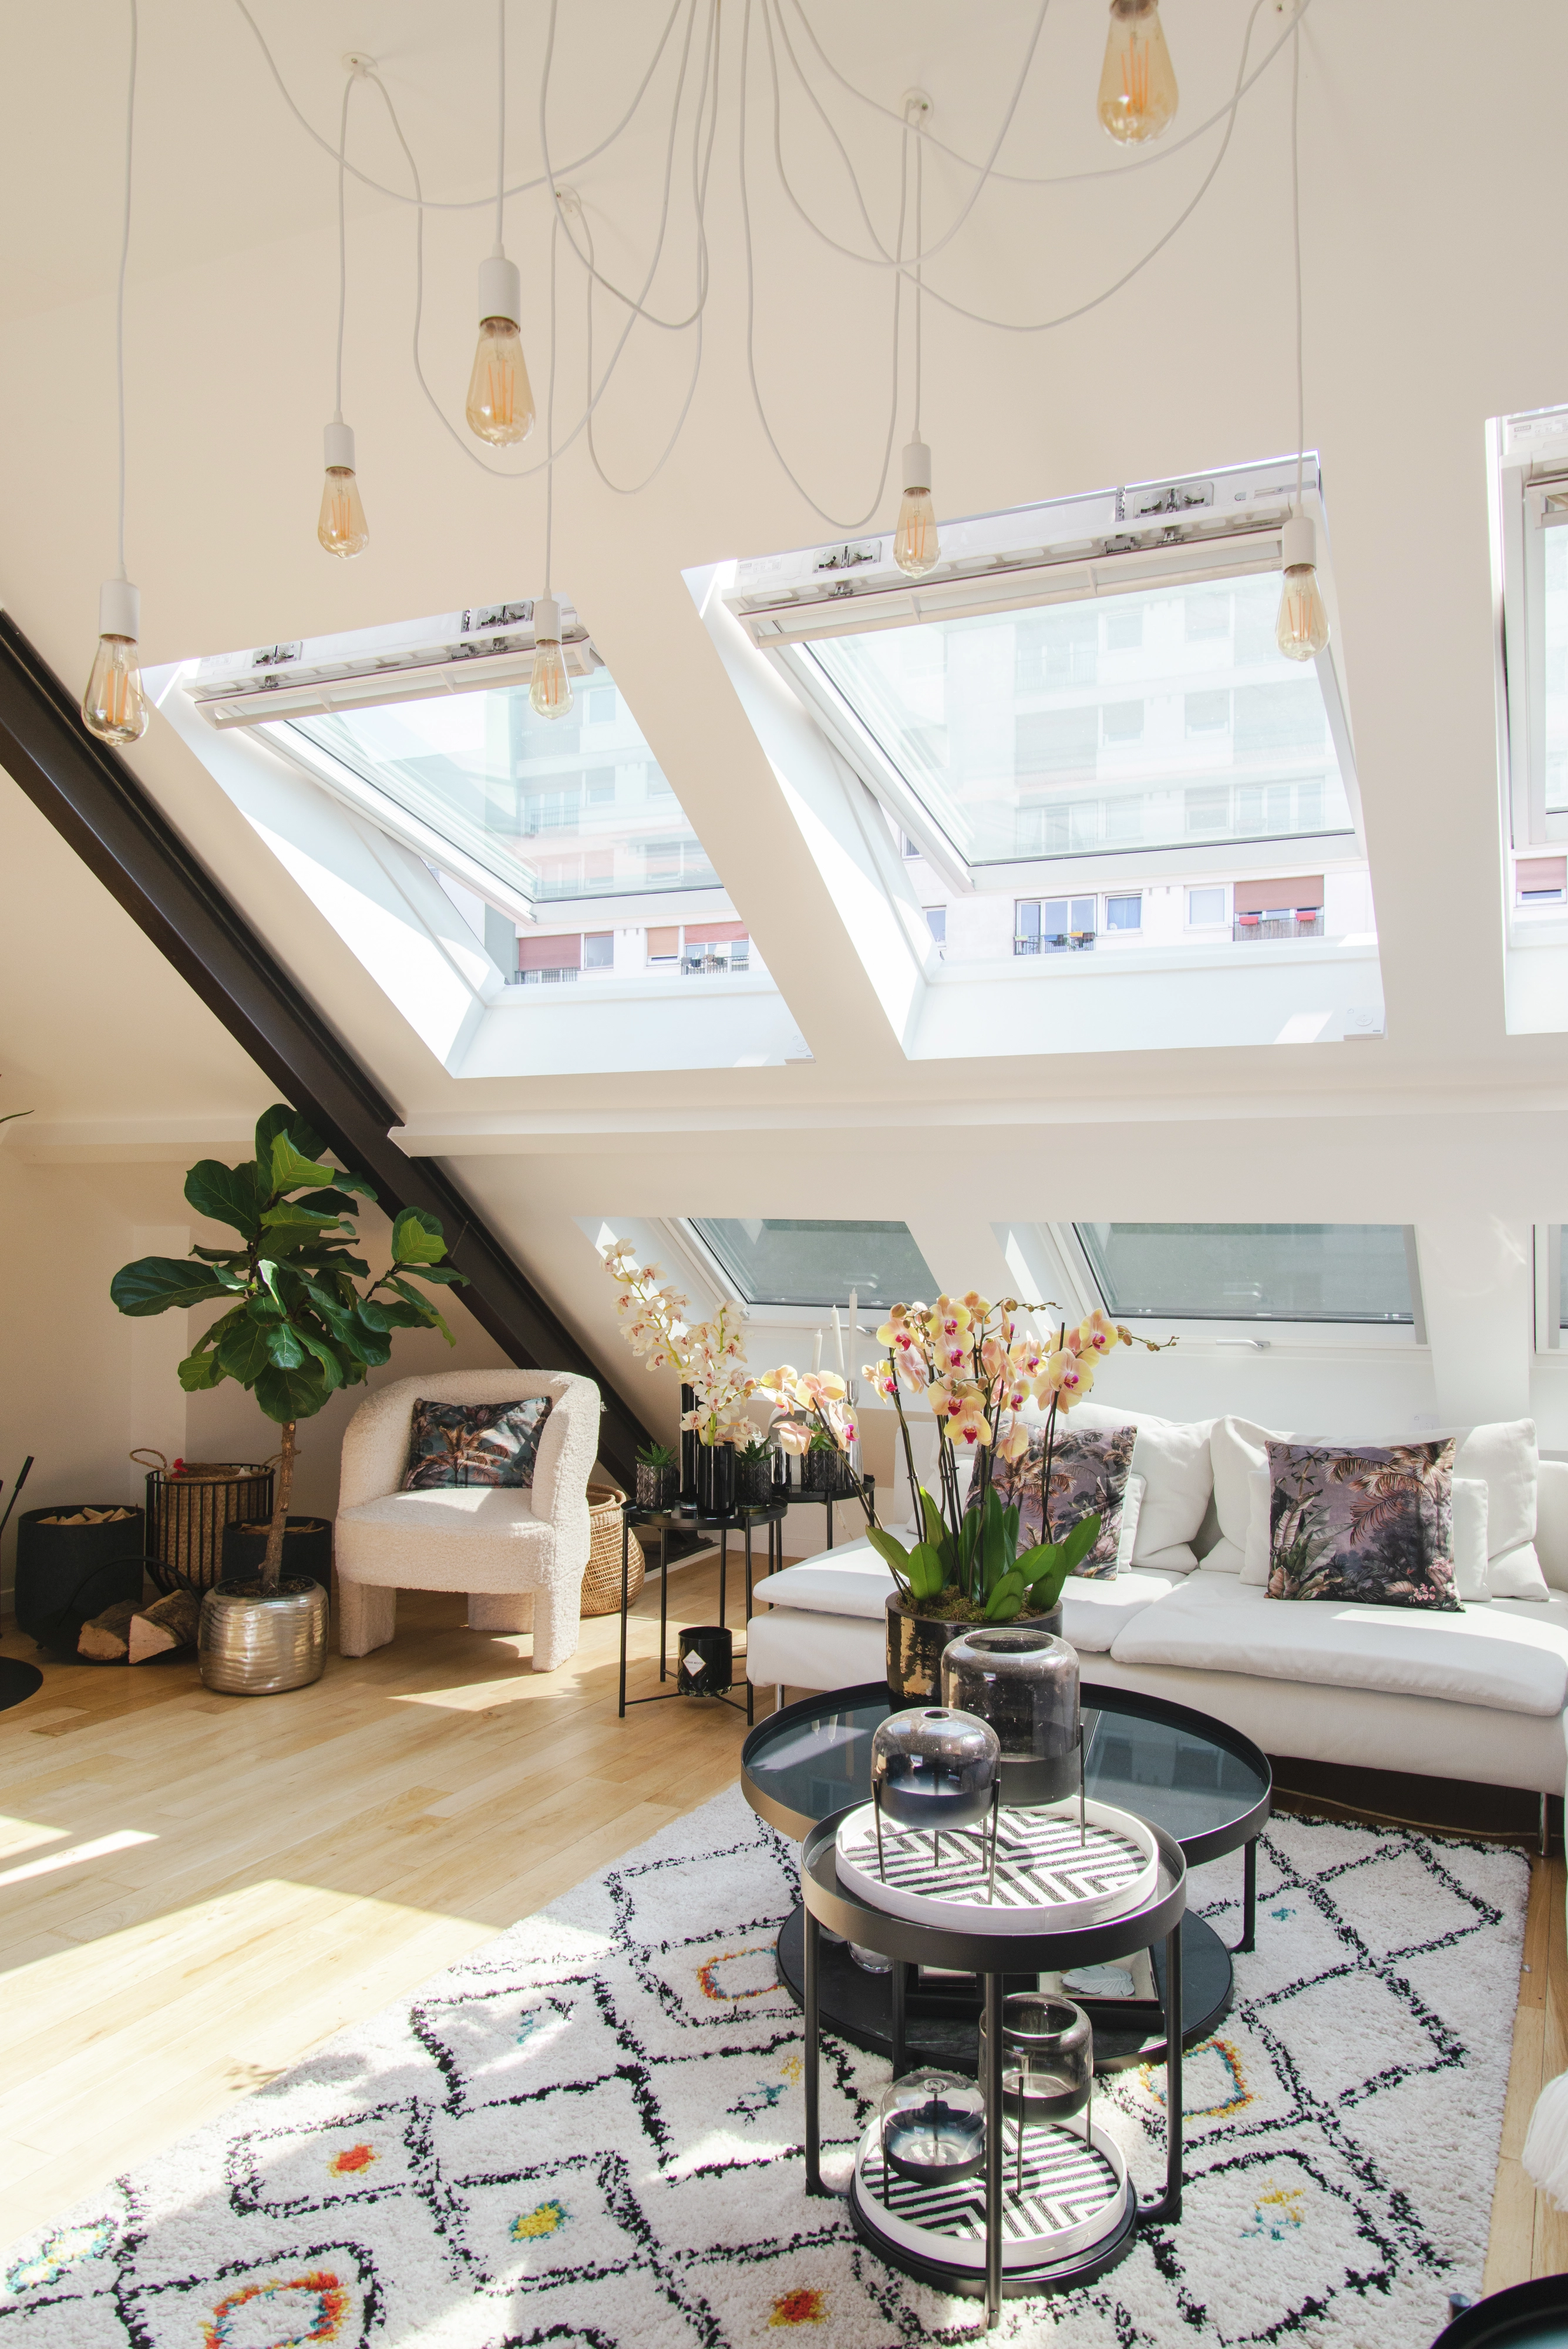 Salon confortable avec lumière naturelle provenant des fenêtres de toit VELUX, décoration moderne et plantes.